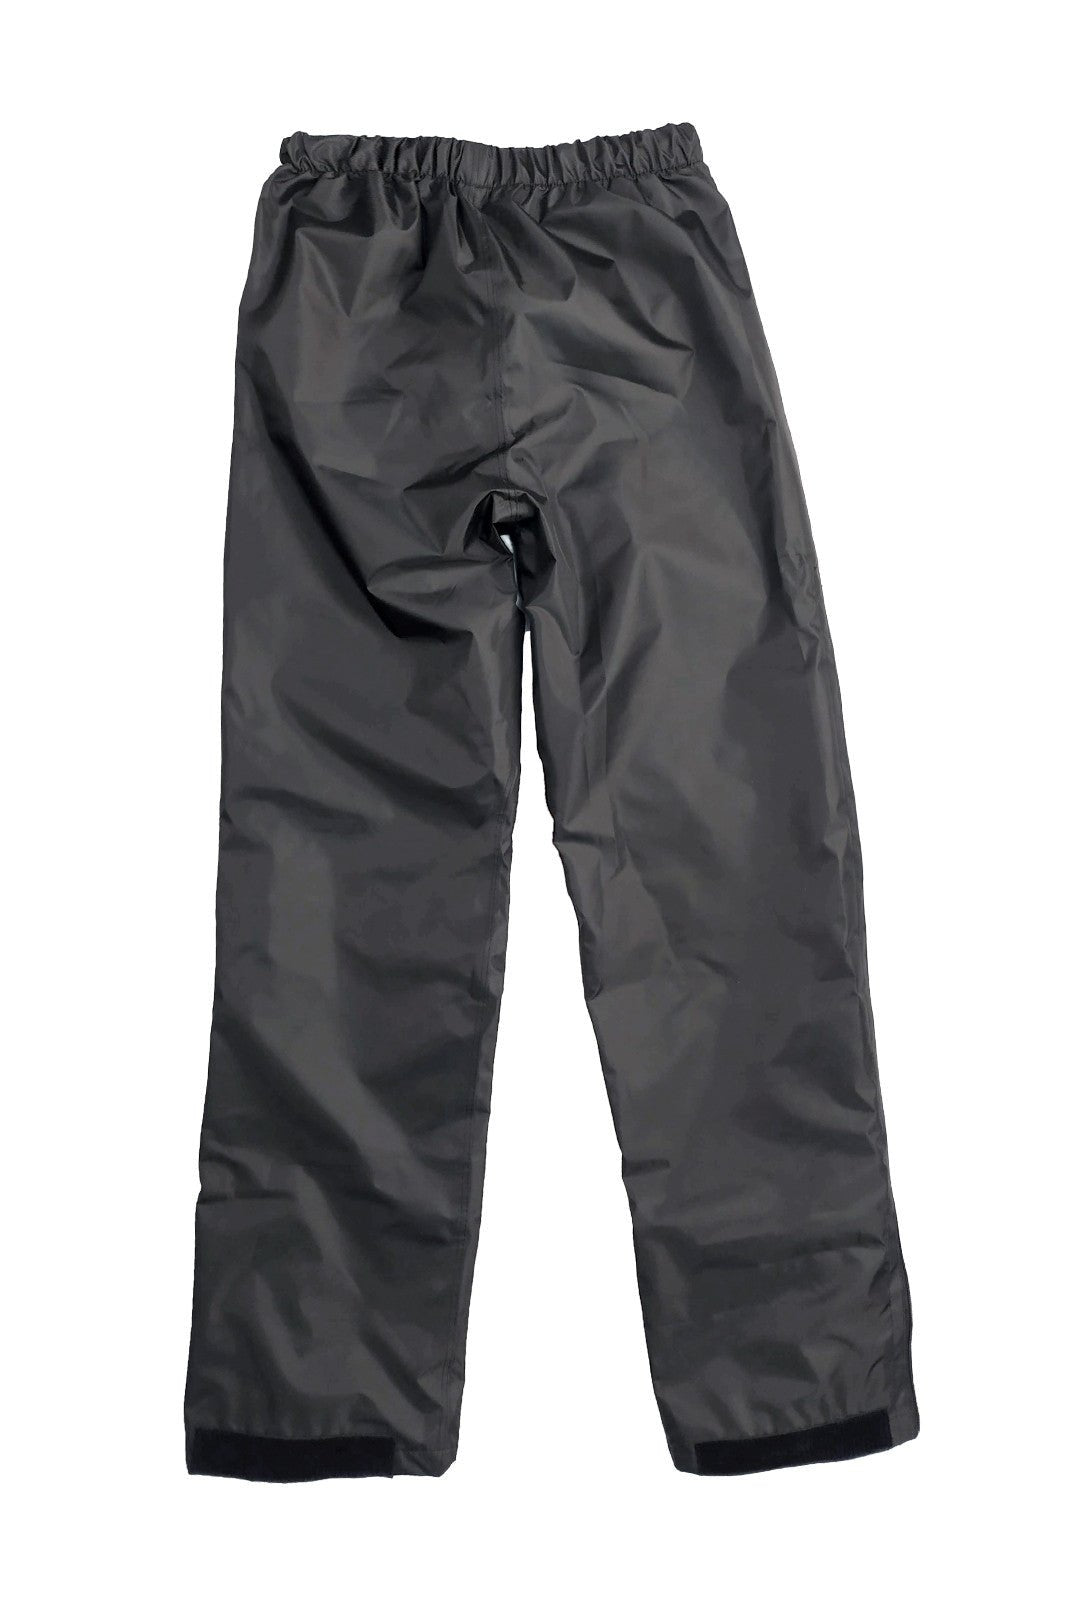 Pantalone antipioggia moto OJ ESTREMO P nero - OnTheRoad.shop - OJ